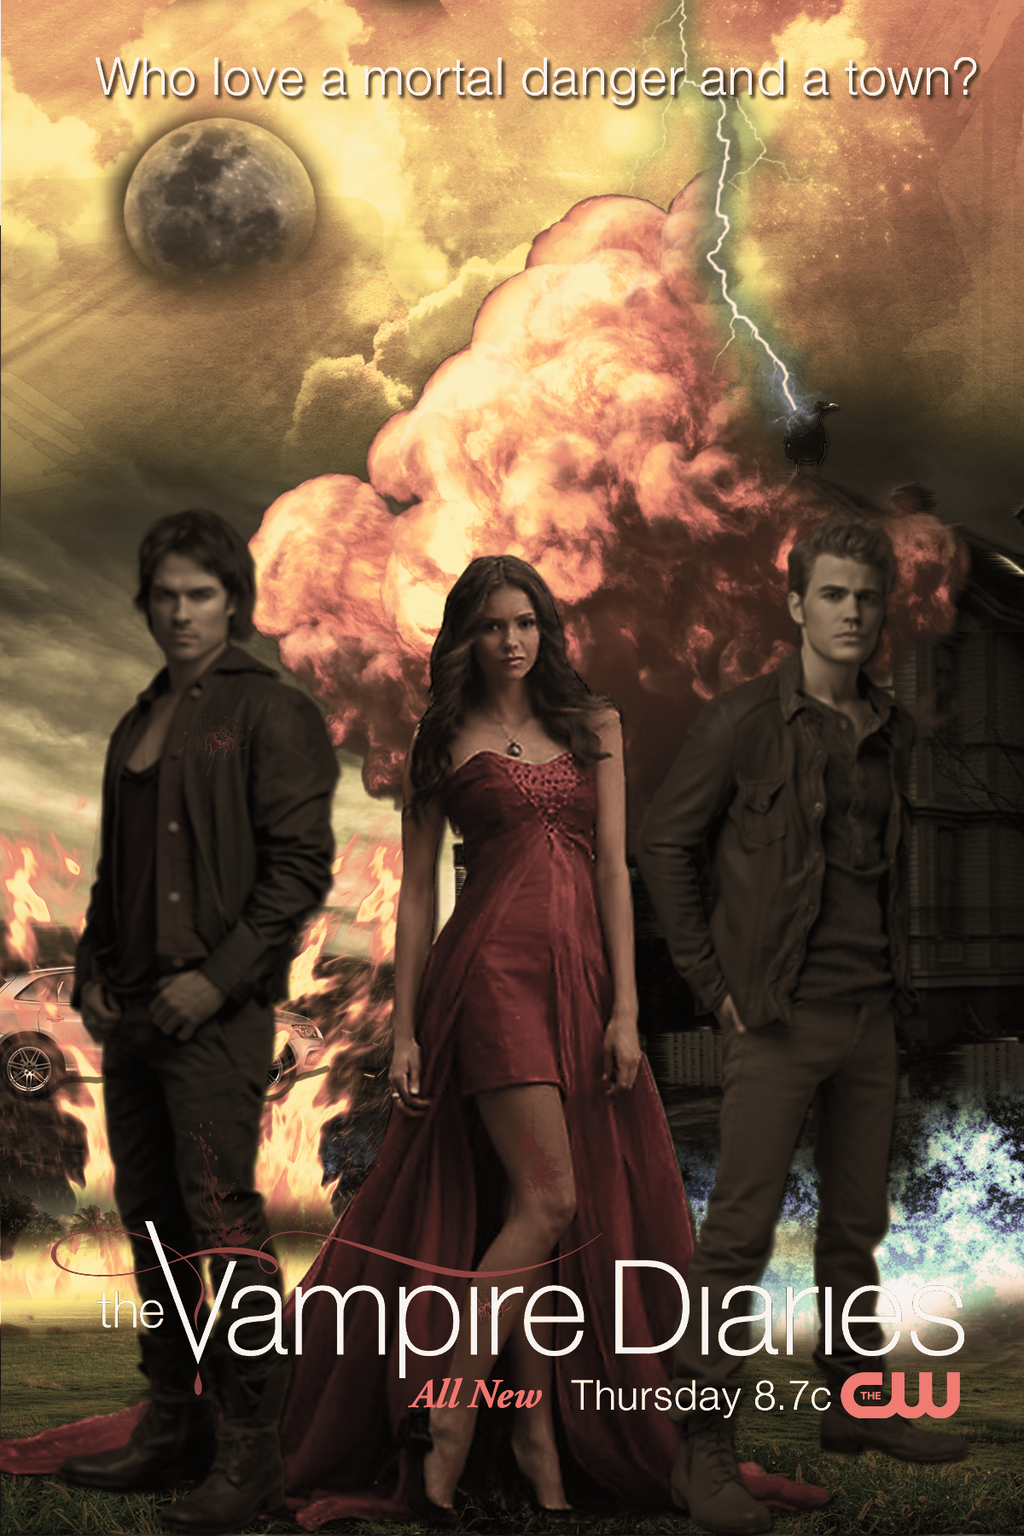 The Vampire Diaries #7